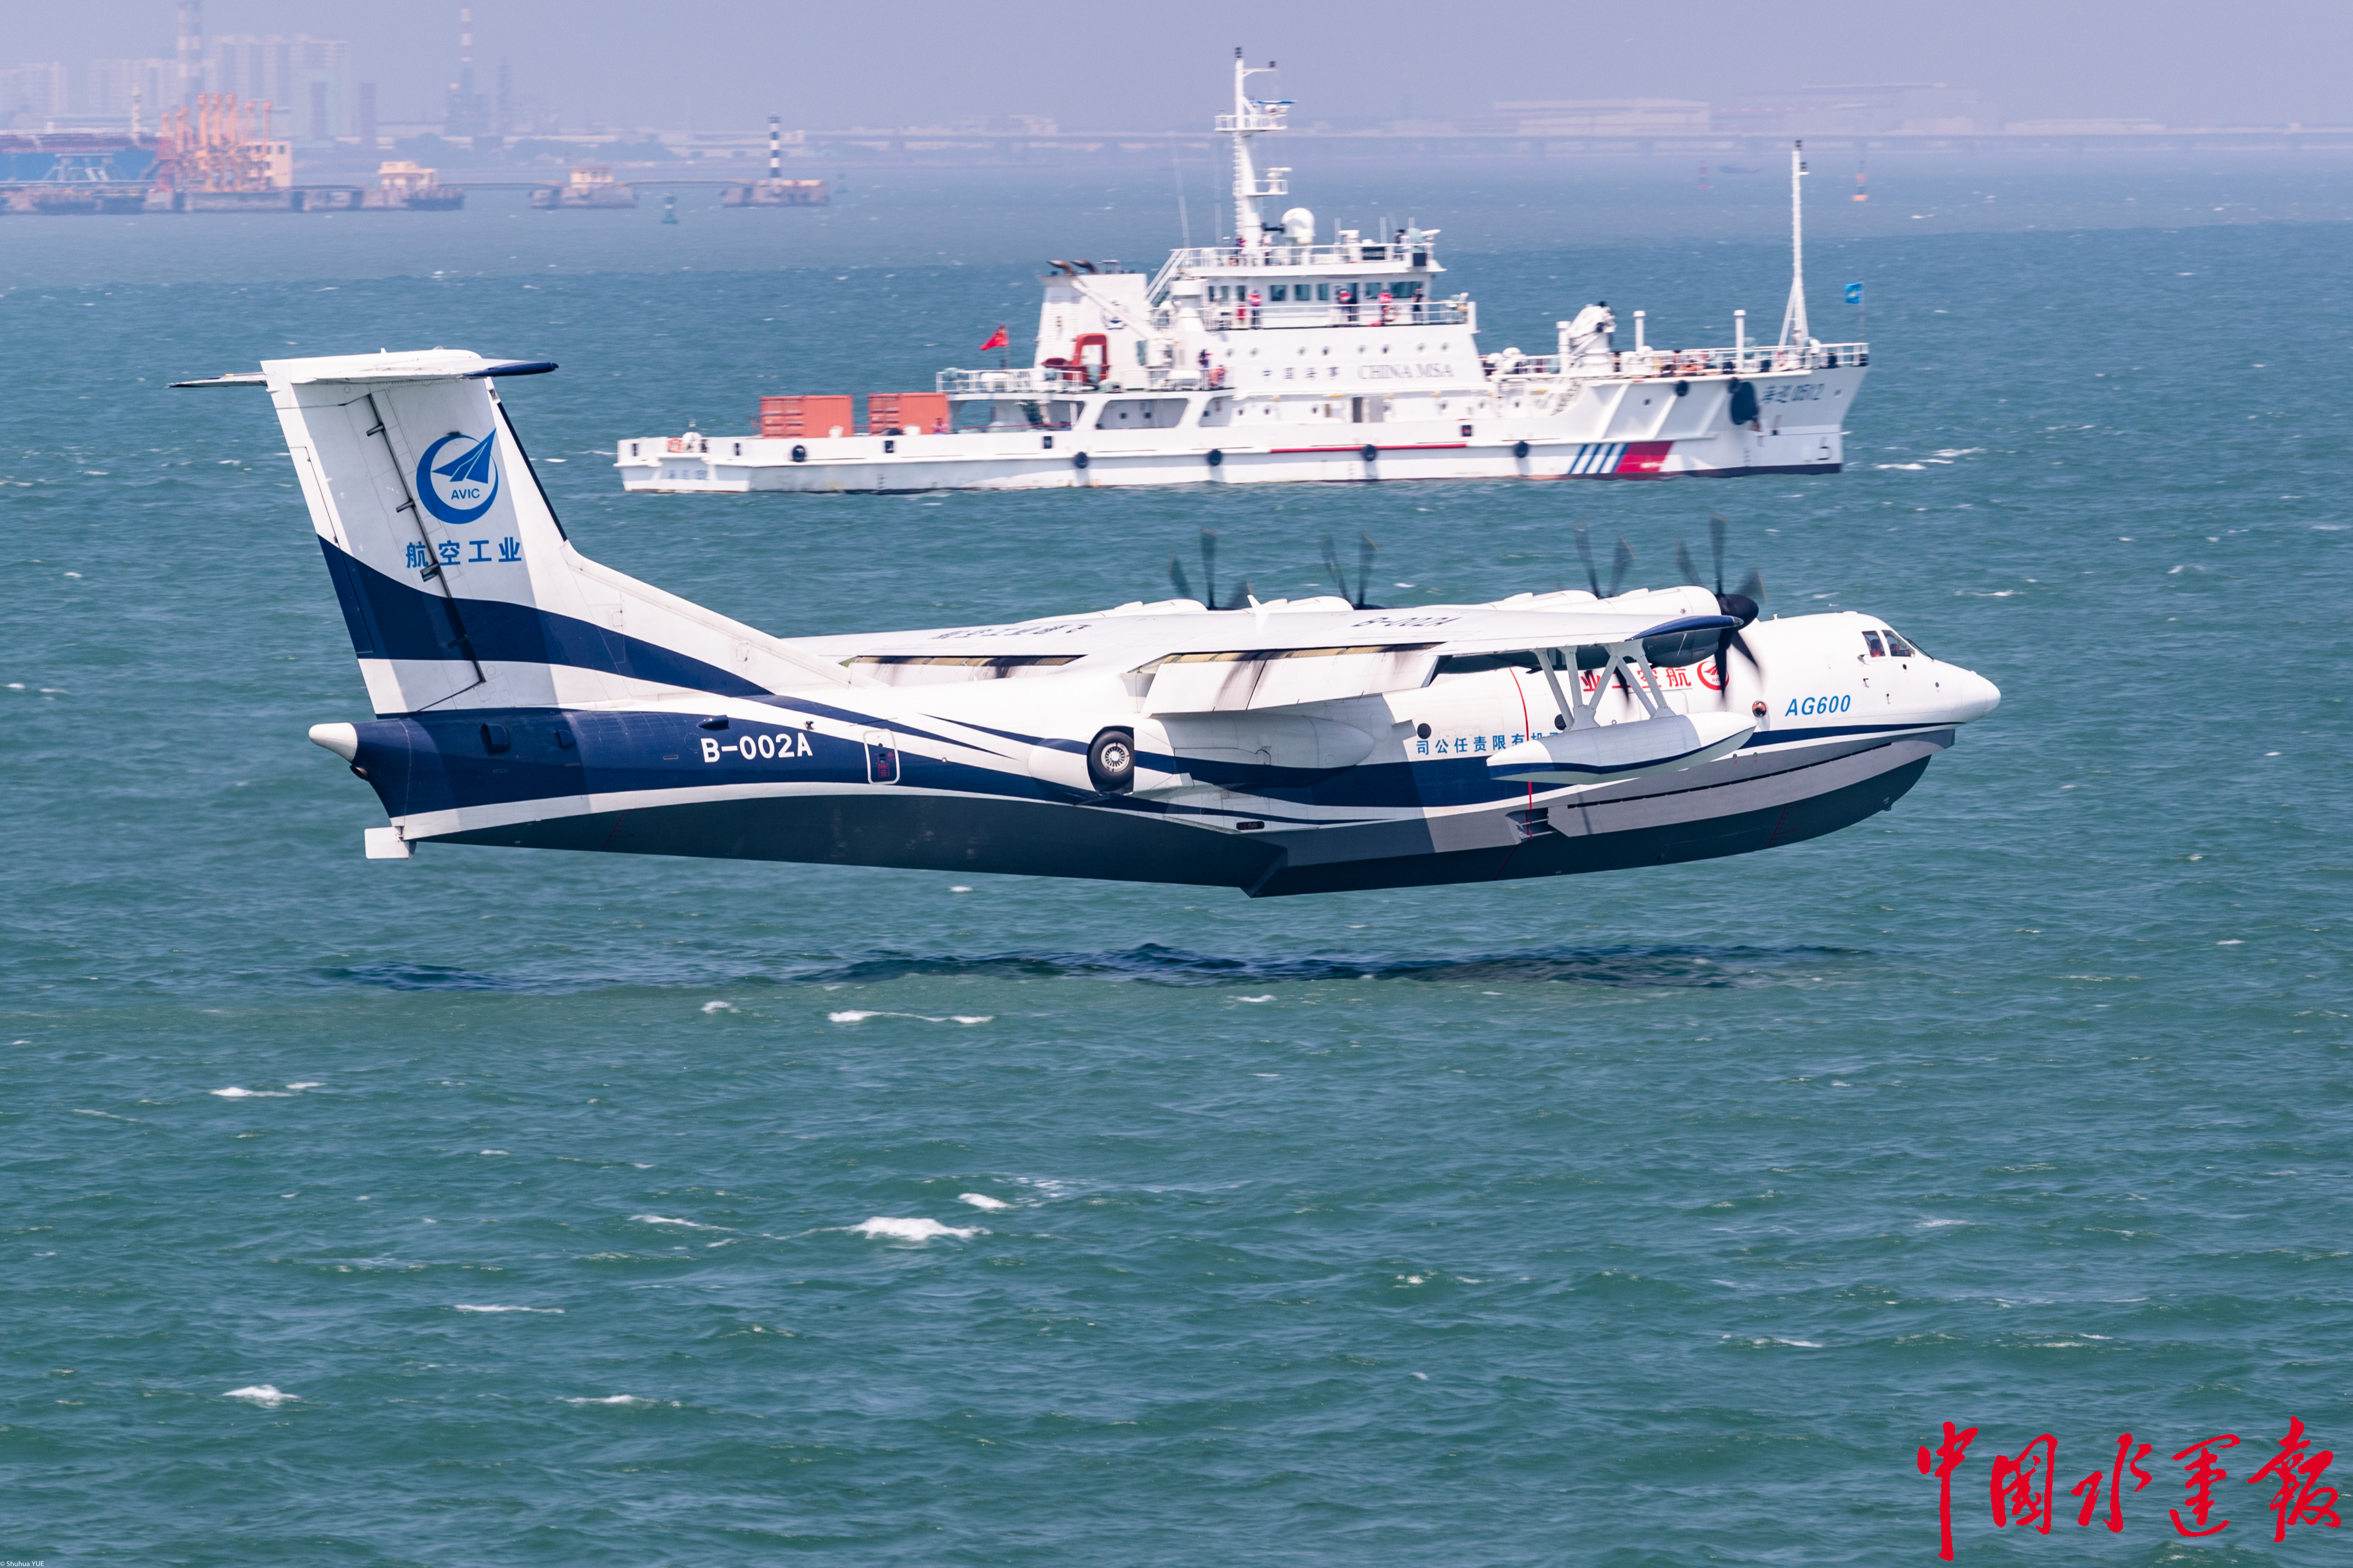 水陆两栖飞机鲲龙ag600成功完成海上首飞